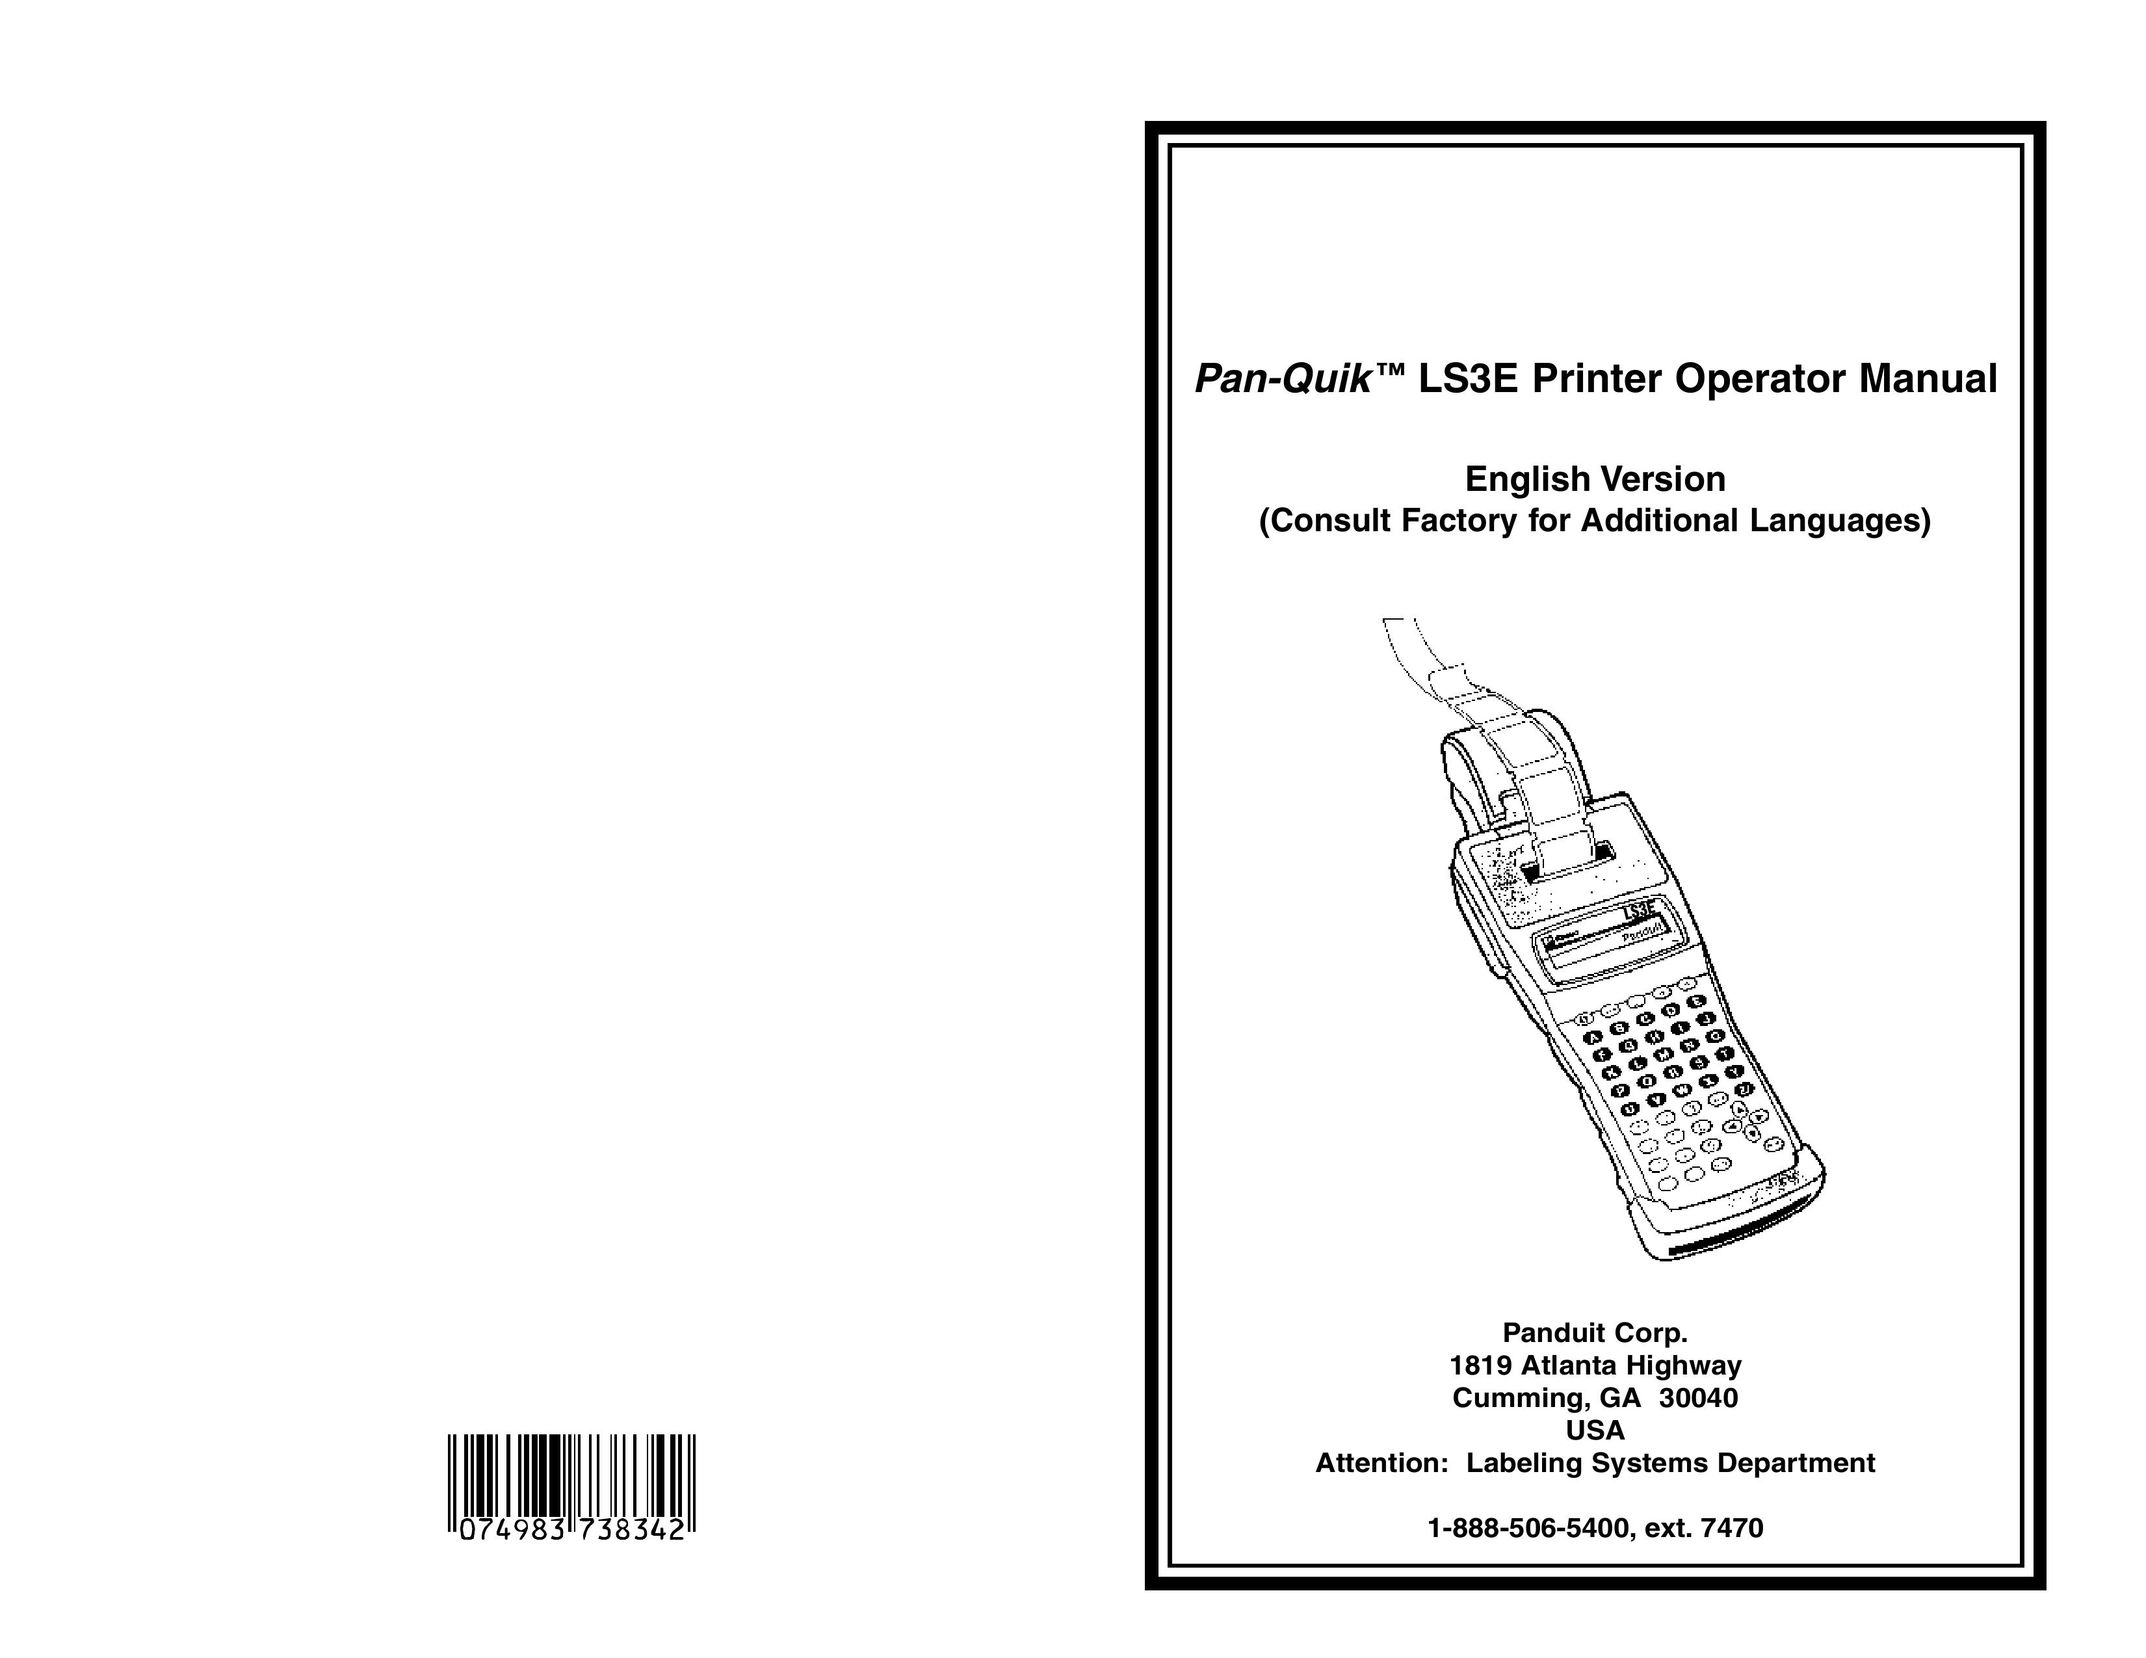 Panduit LS3E Printer User Manual